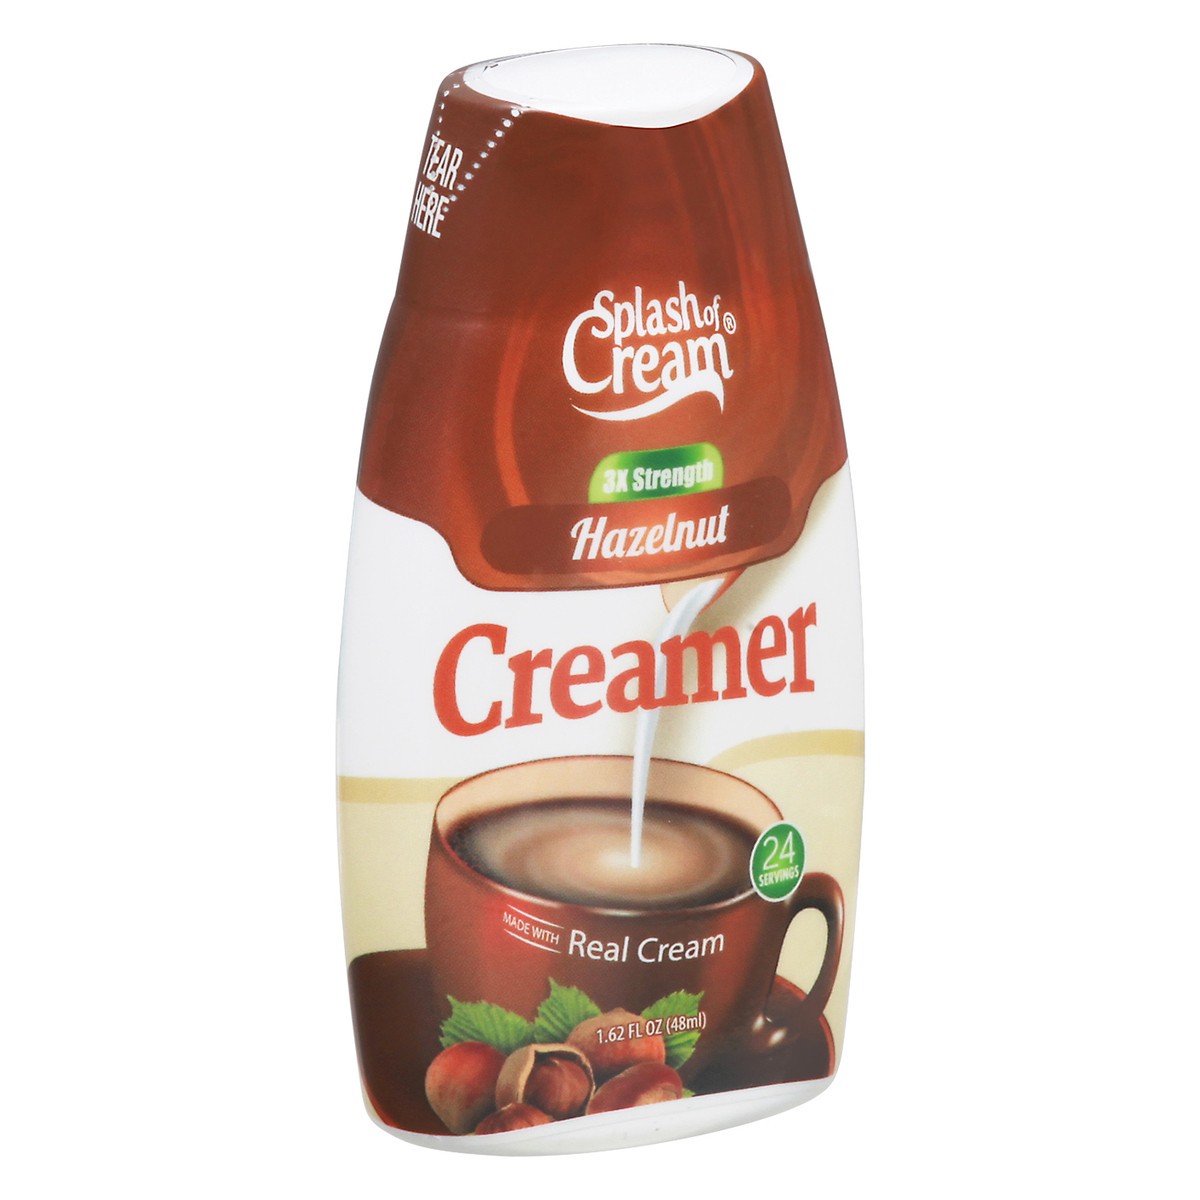 slide 2 of 9, Splash of Cream 3x Strength Hazelnut Creamer 1.62 fl oz, 1.62 fl oz